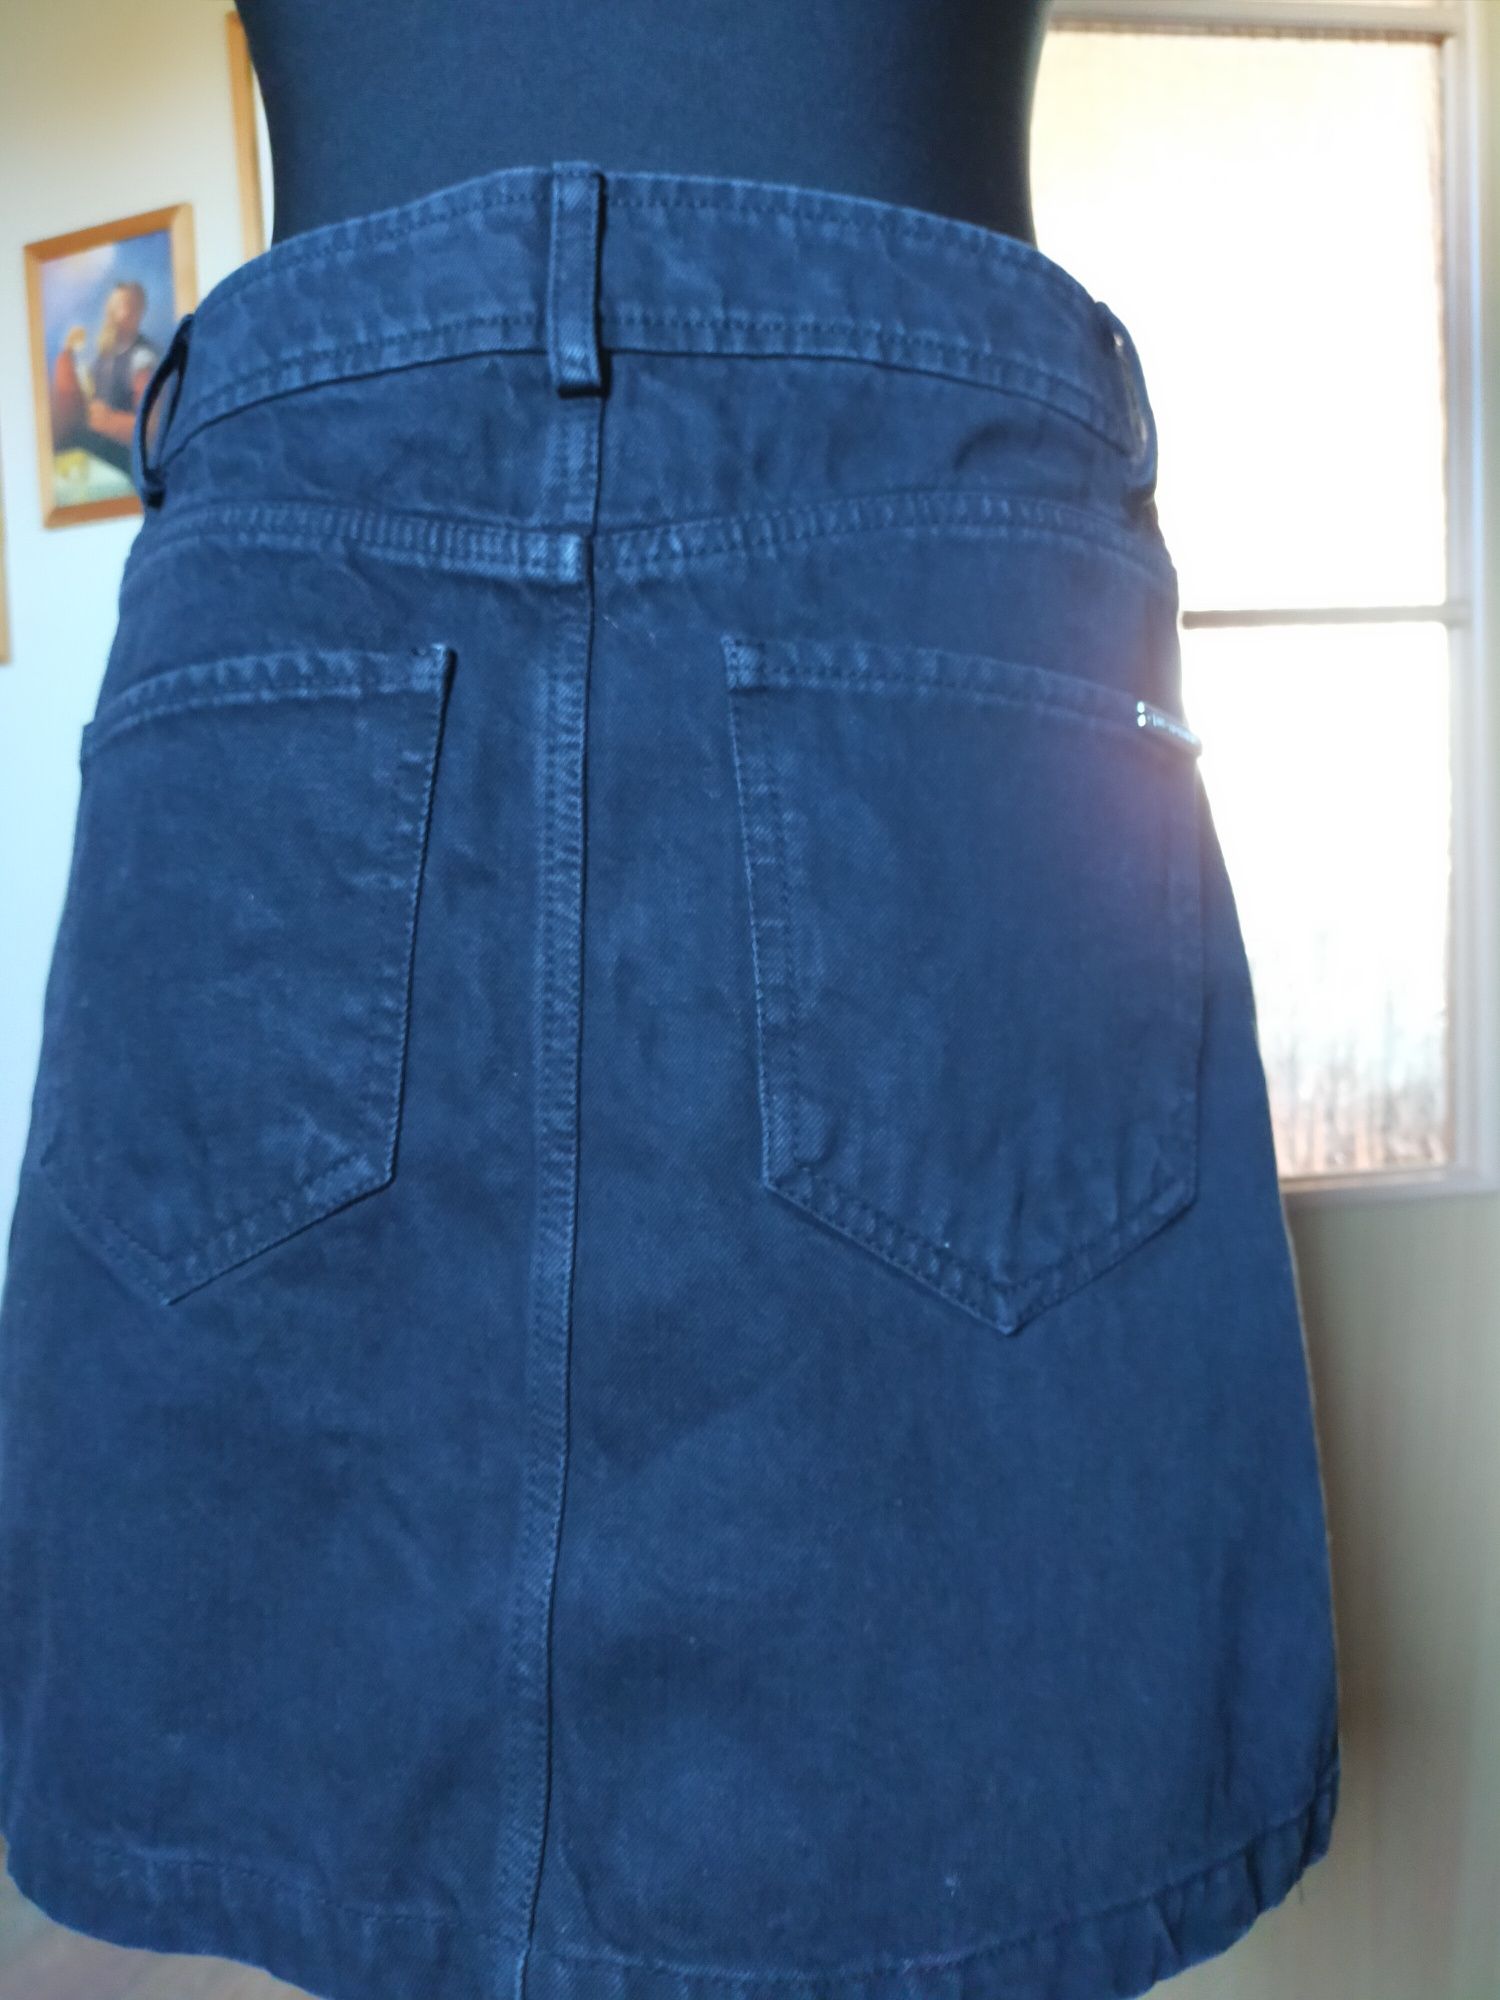 Spódnica jeansowa jeans czarna guziki Jane Norman rozmiar 36 S